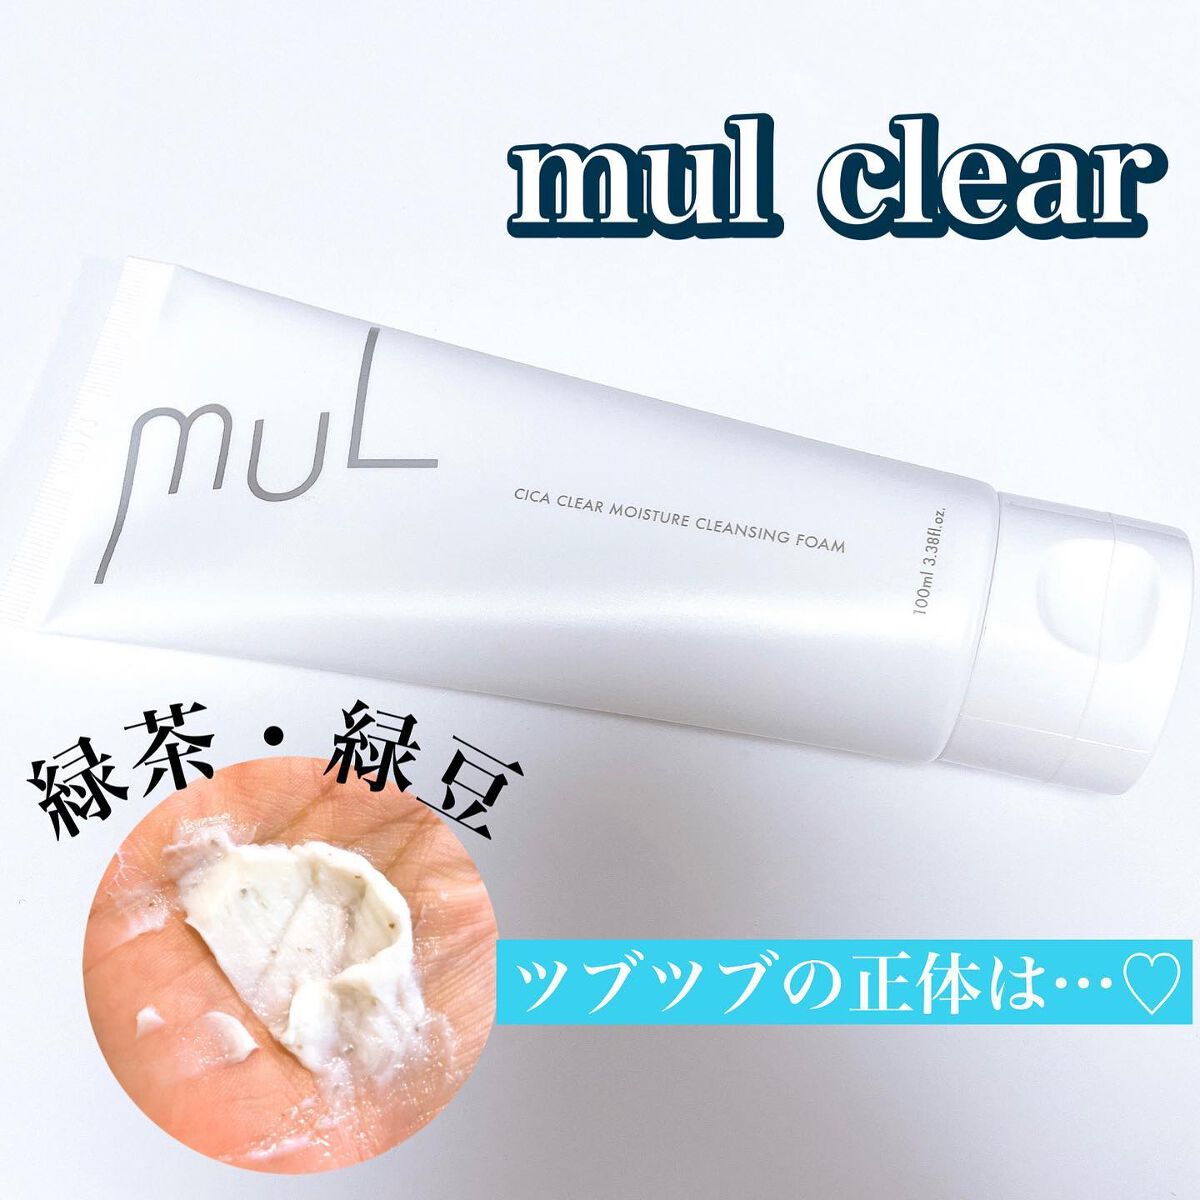 MUL♡ CICA CLEAR MOISTURE CLEANSING FOAM